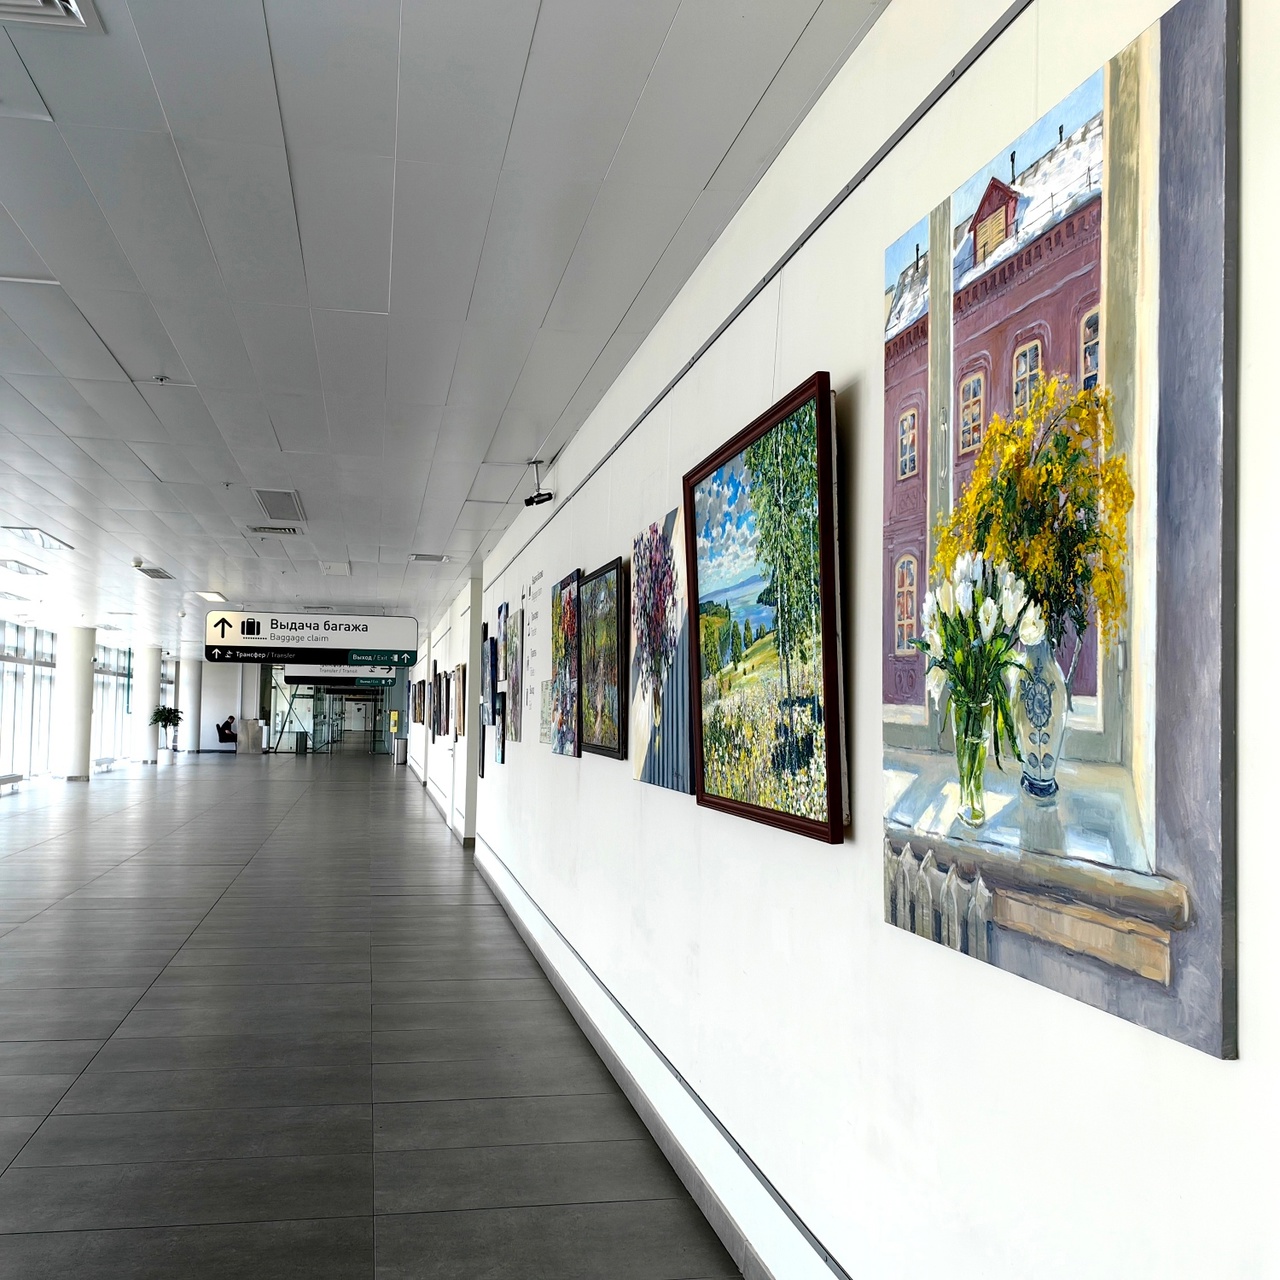  Картины самарских художников выставили в галерее прилета аэропорта «Курумоч» 